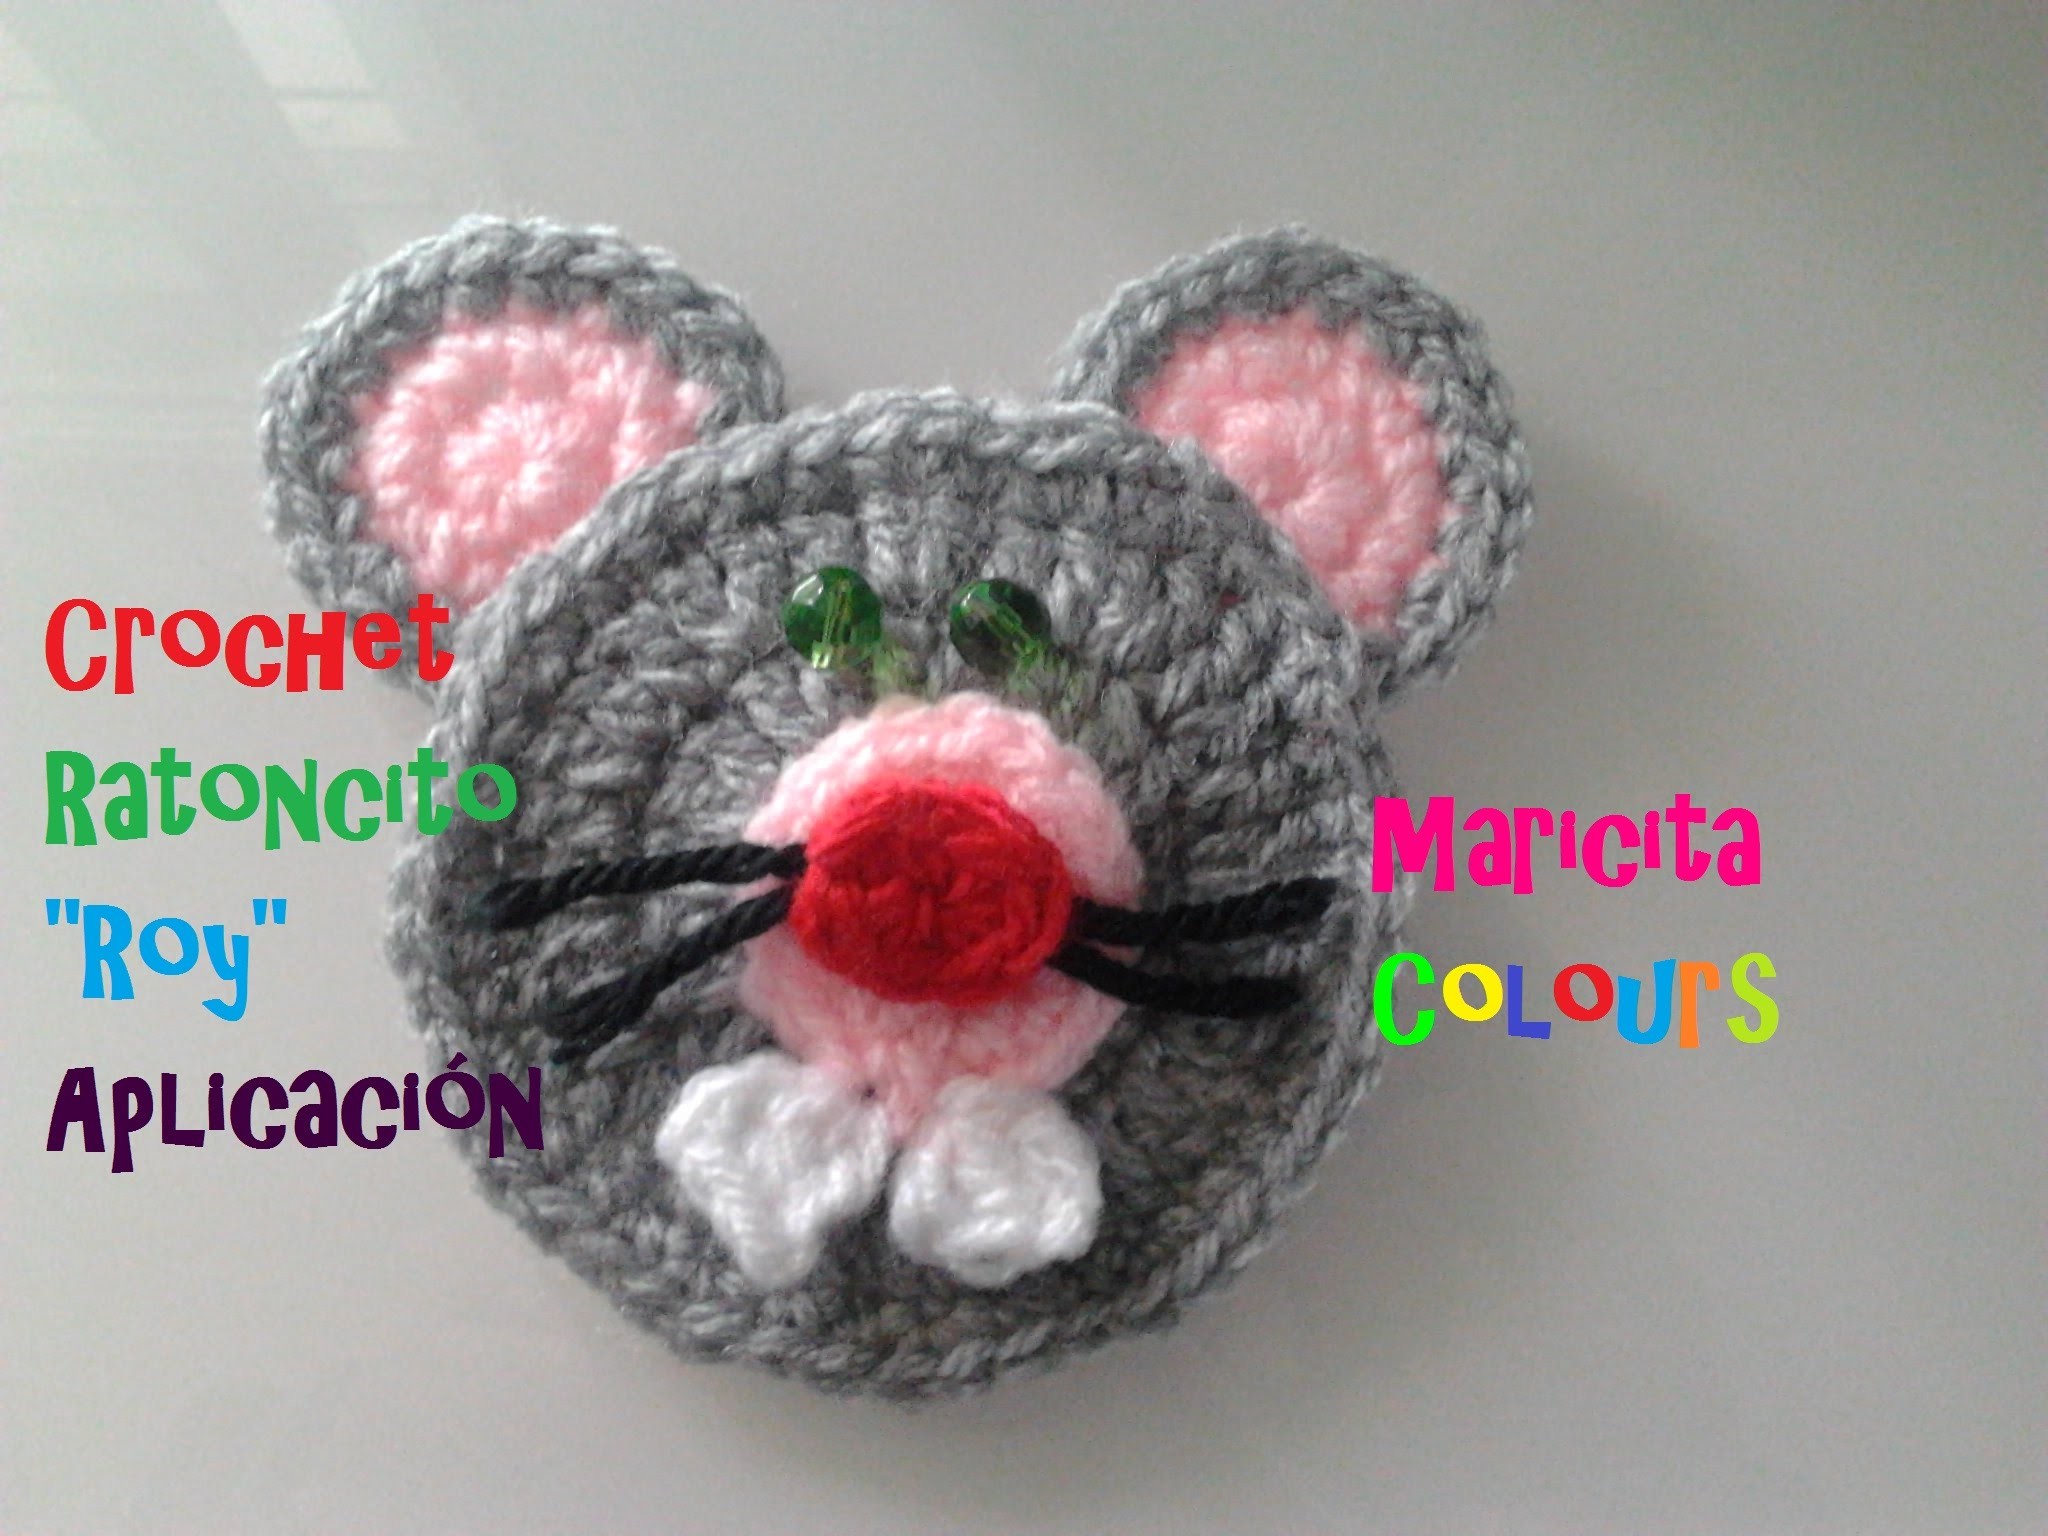 Crochet Tutorial Ratoncito "Roy" (Parte 2) Aplicación por Maricita Colours